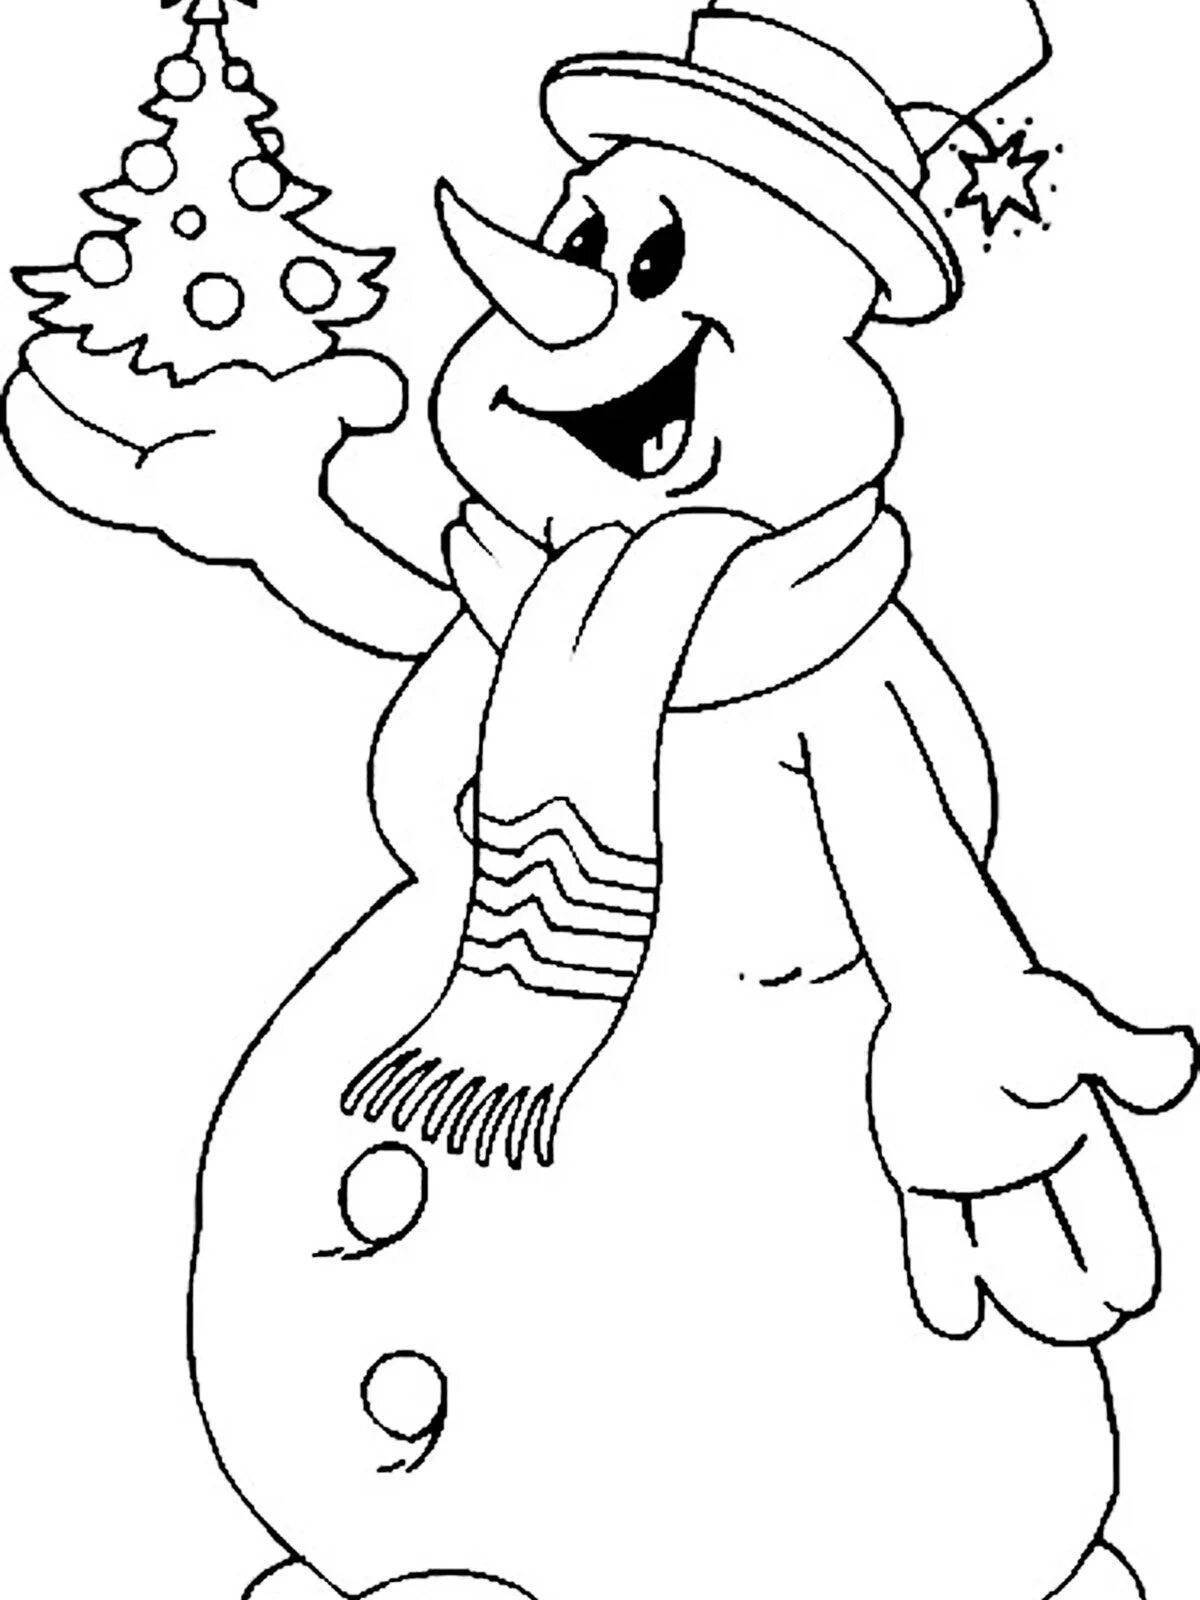 Adorable Christmas snowman coloring book